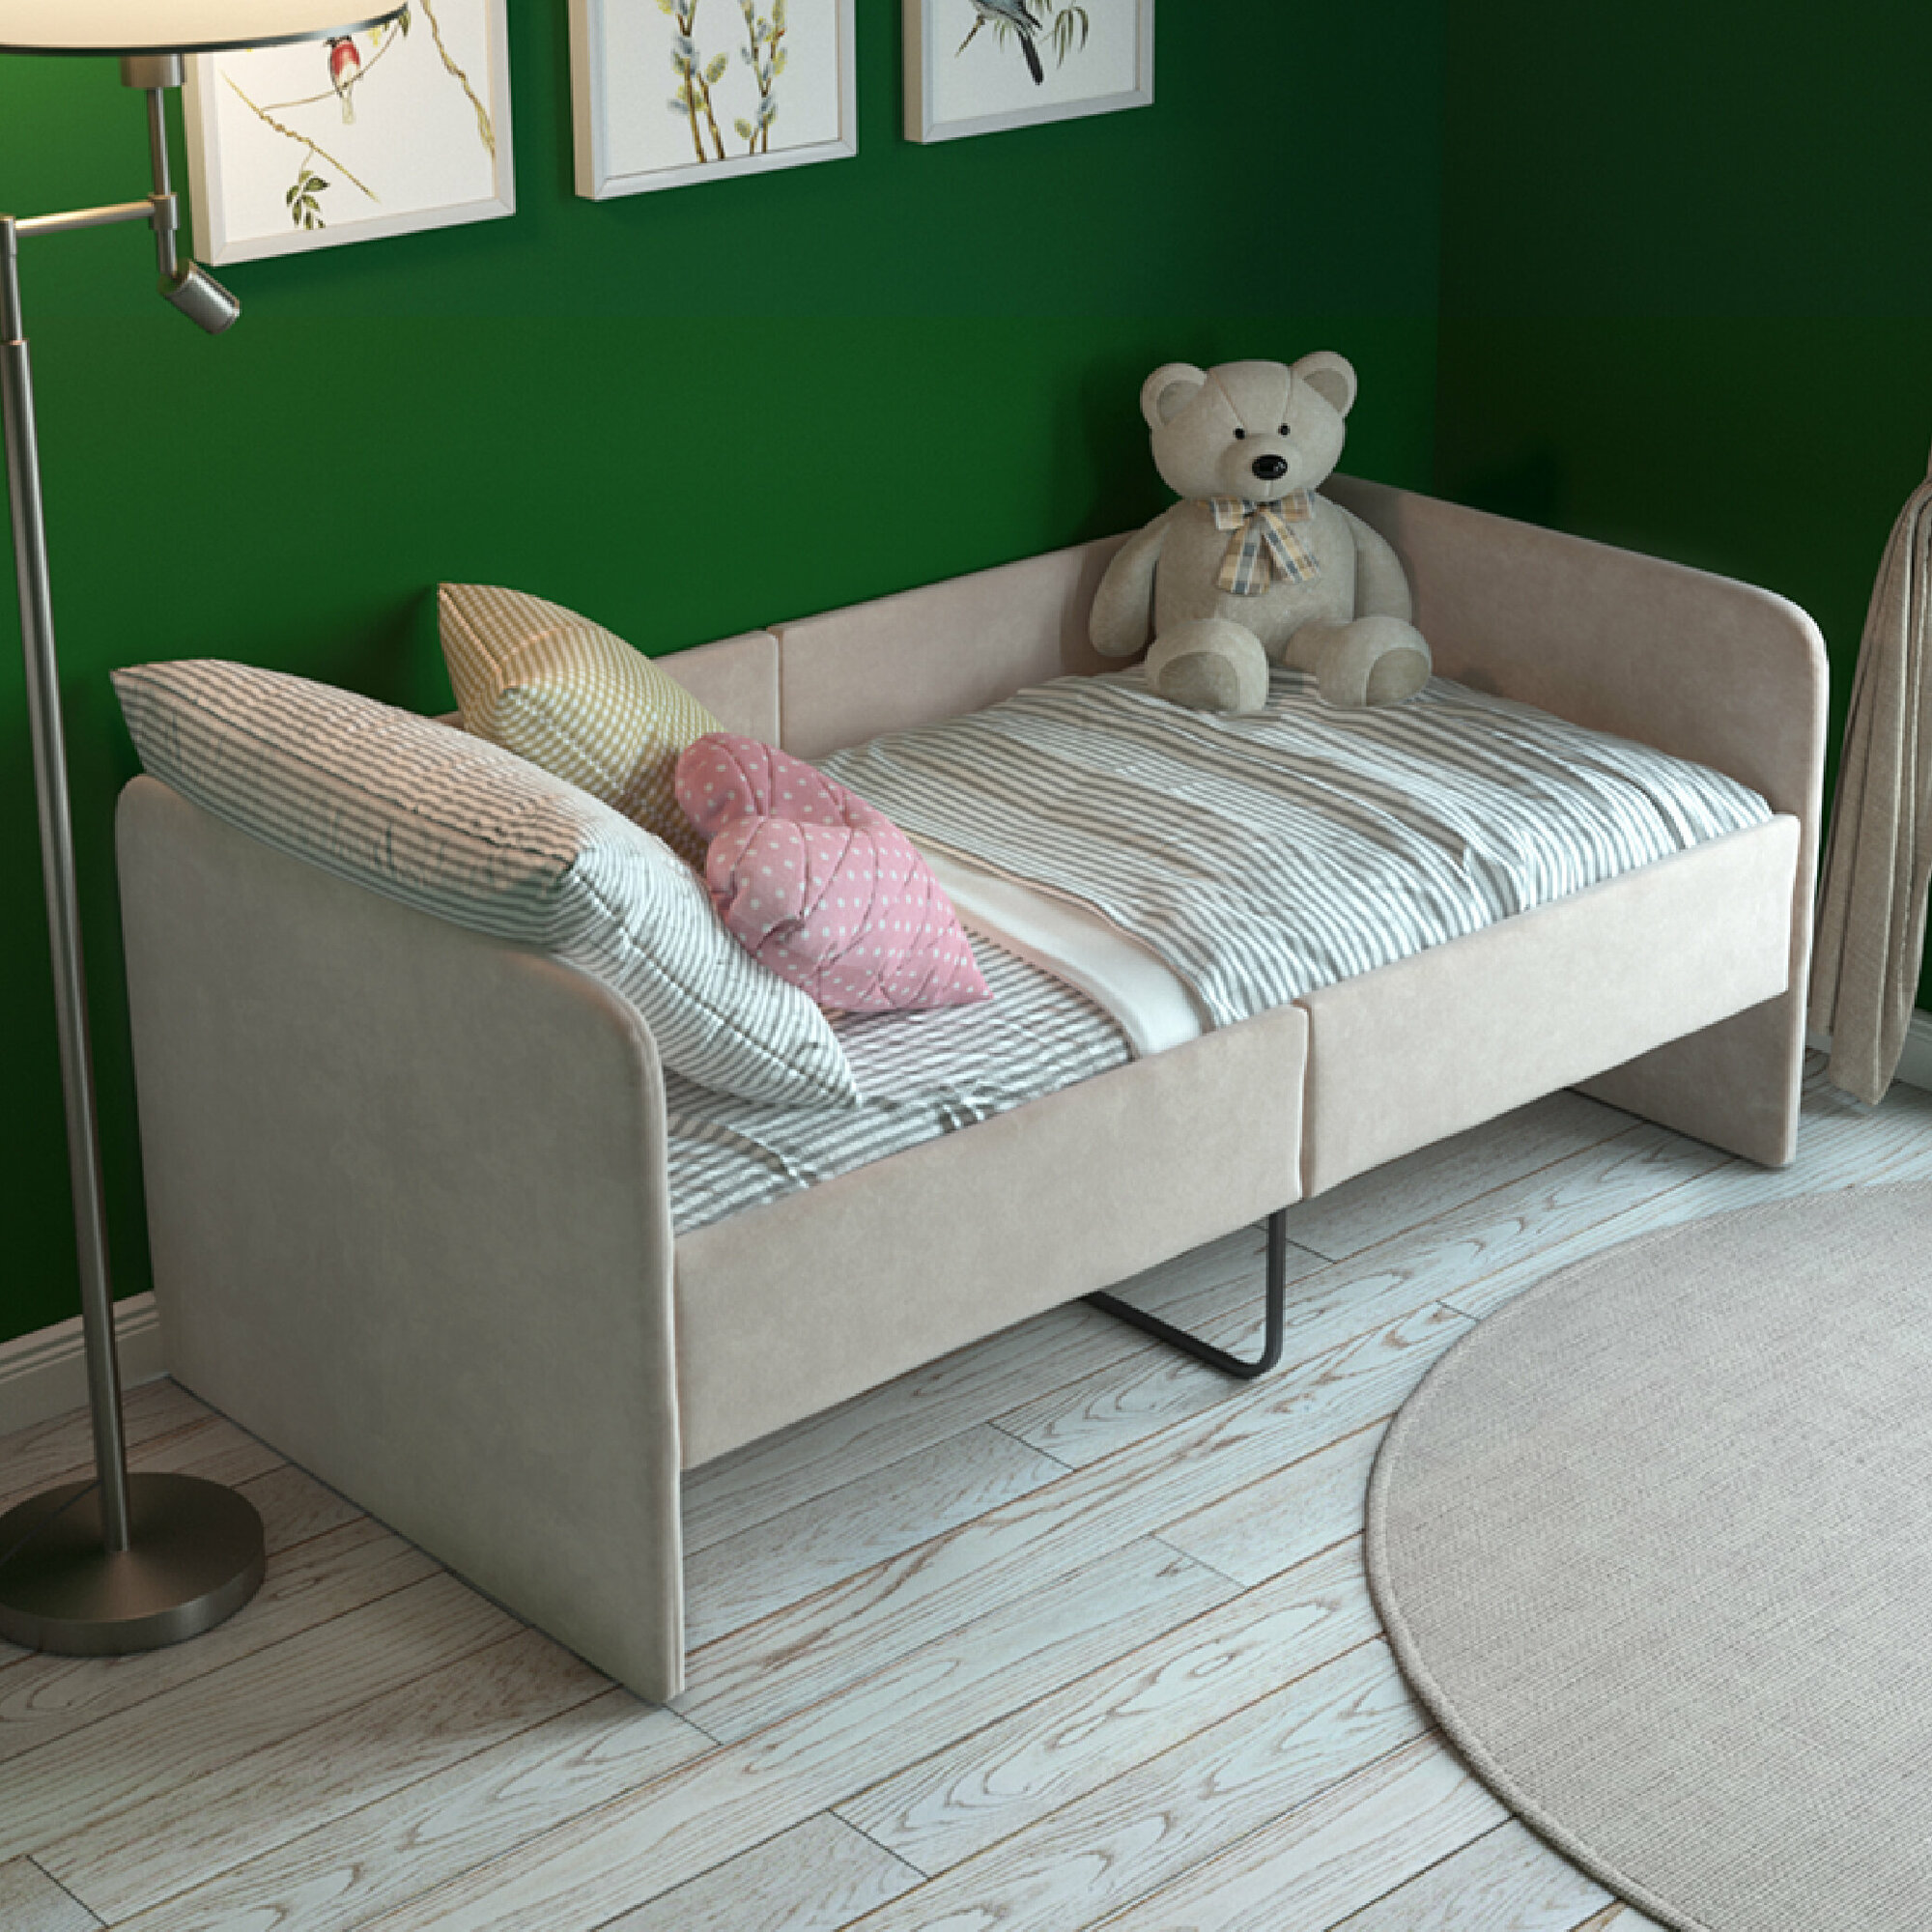 Детский диван кровать с бортиками Smile 140х70 см, цвет Бежевый, с мягким изголовьем для детей от 3 лет